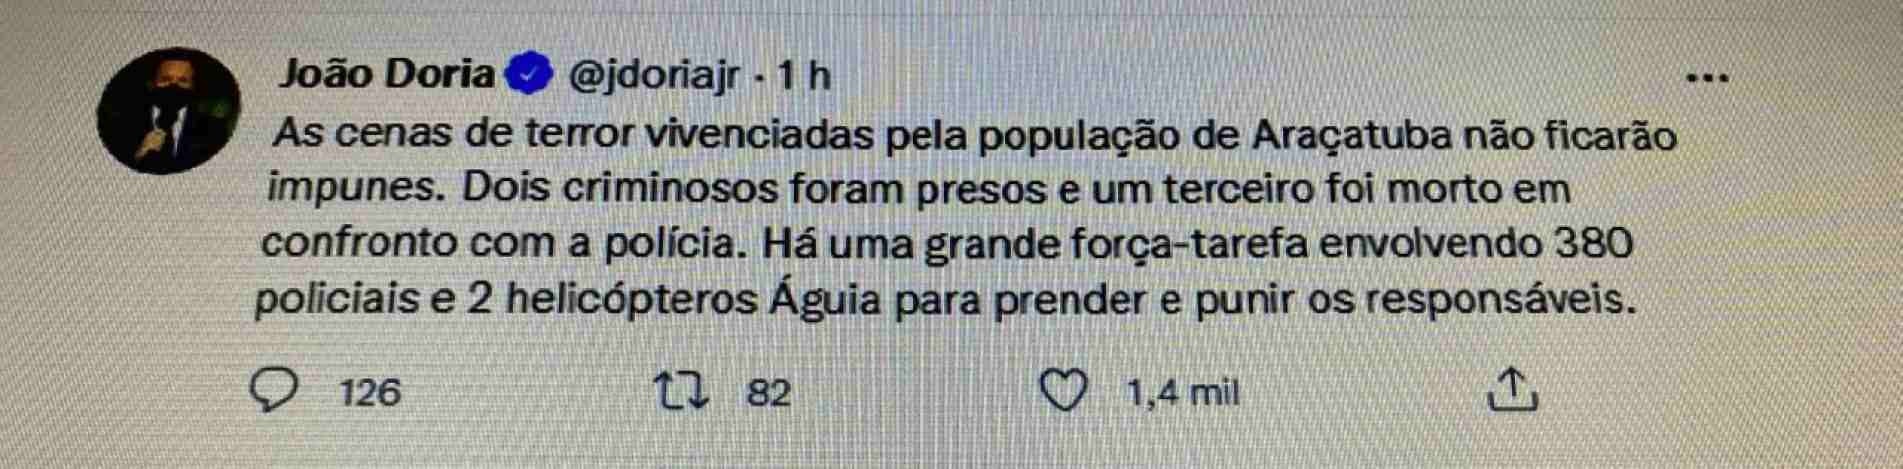 Governador João Doria se pronunciou oficialmente em suas redes sociais sobre a ação de criminosos em Araçatuba nesta segunda (30).